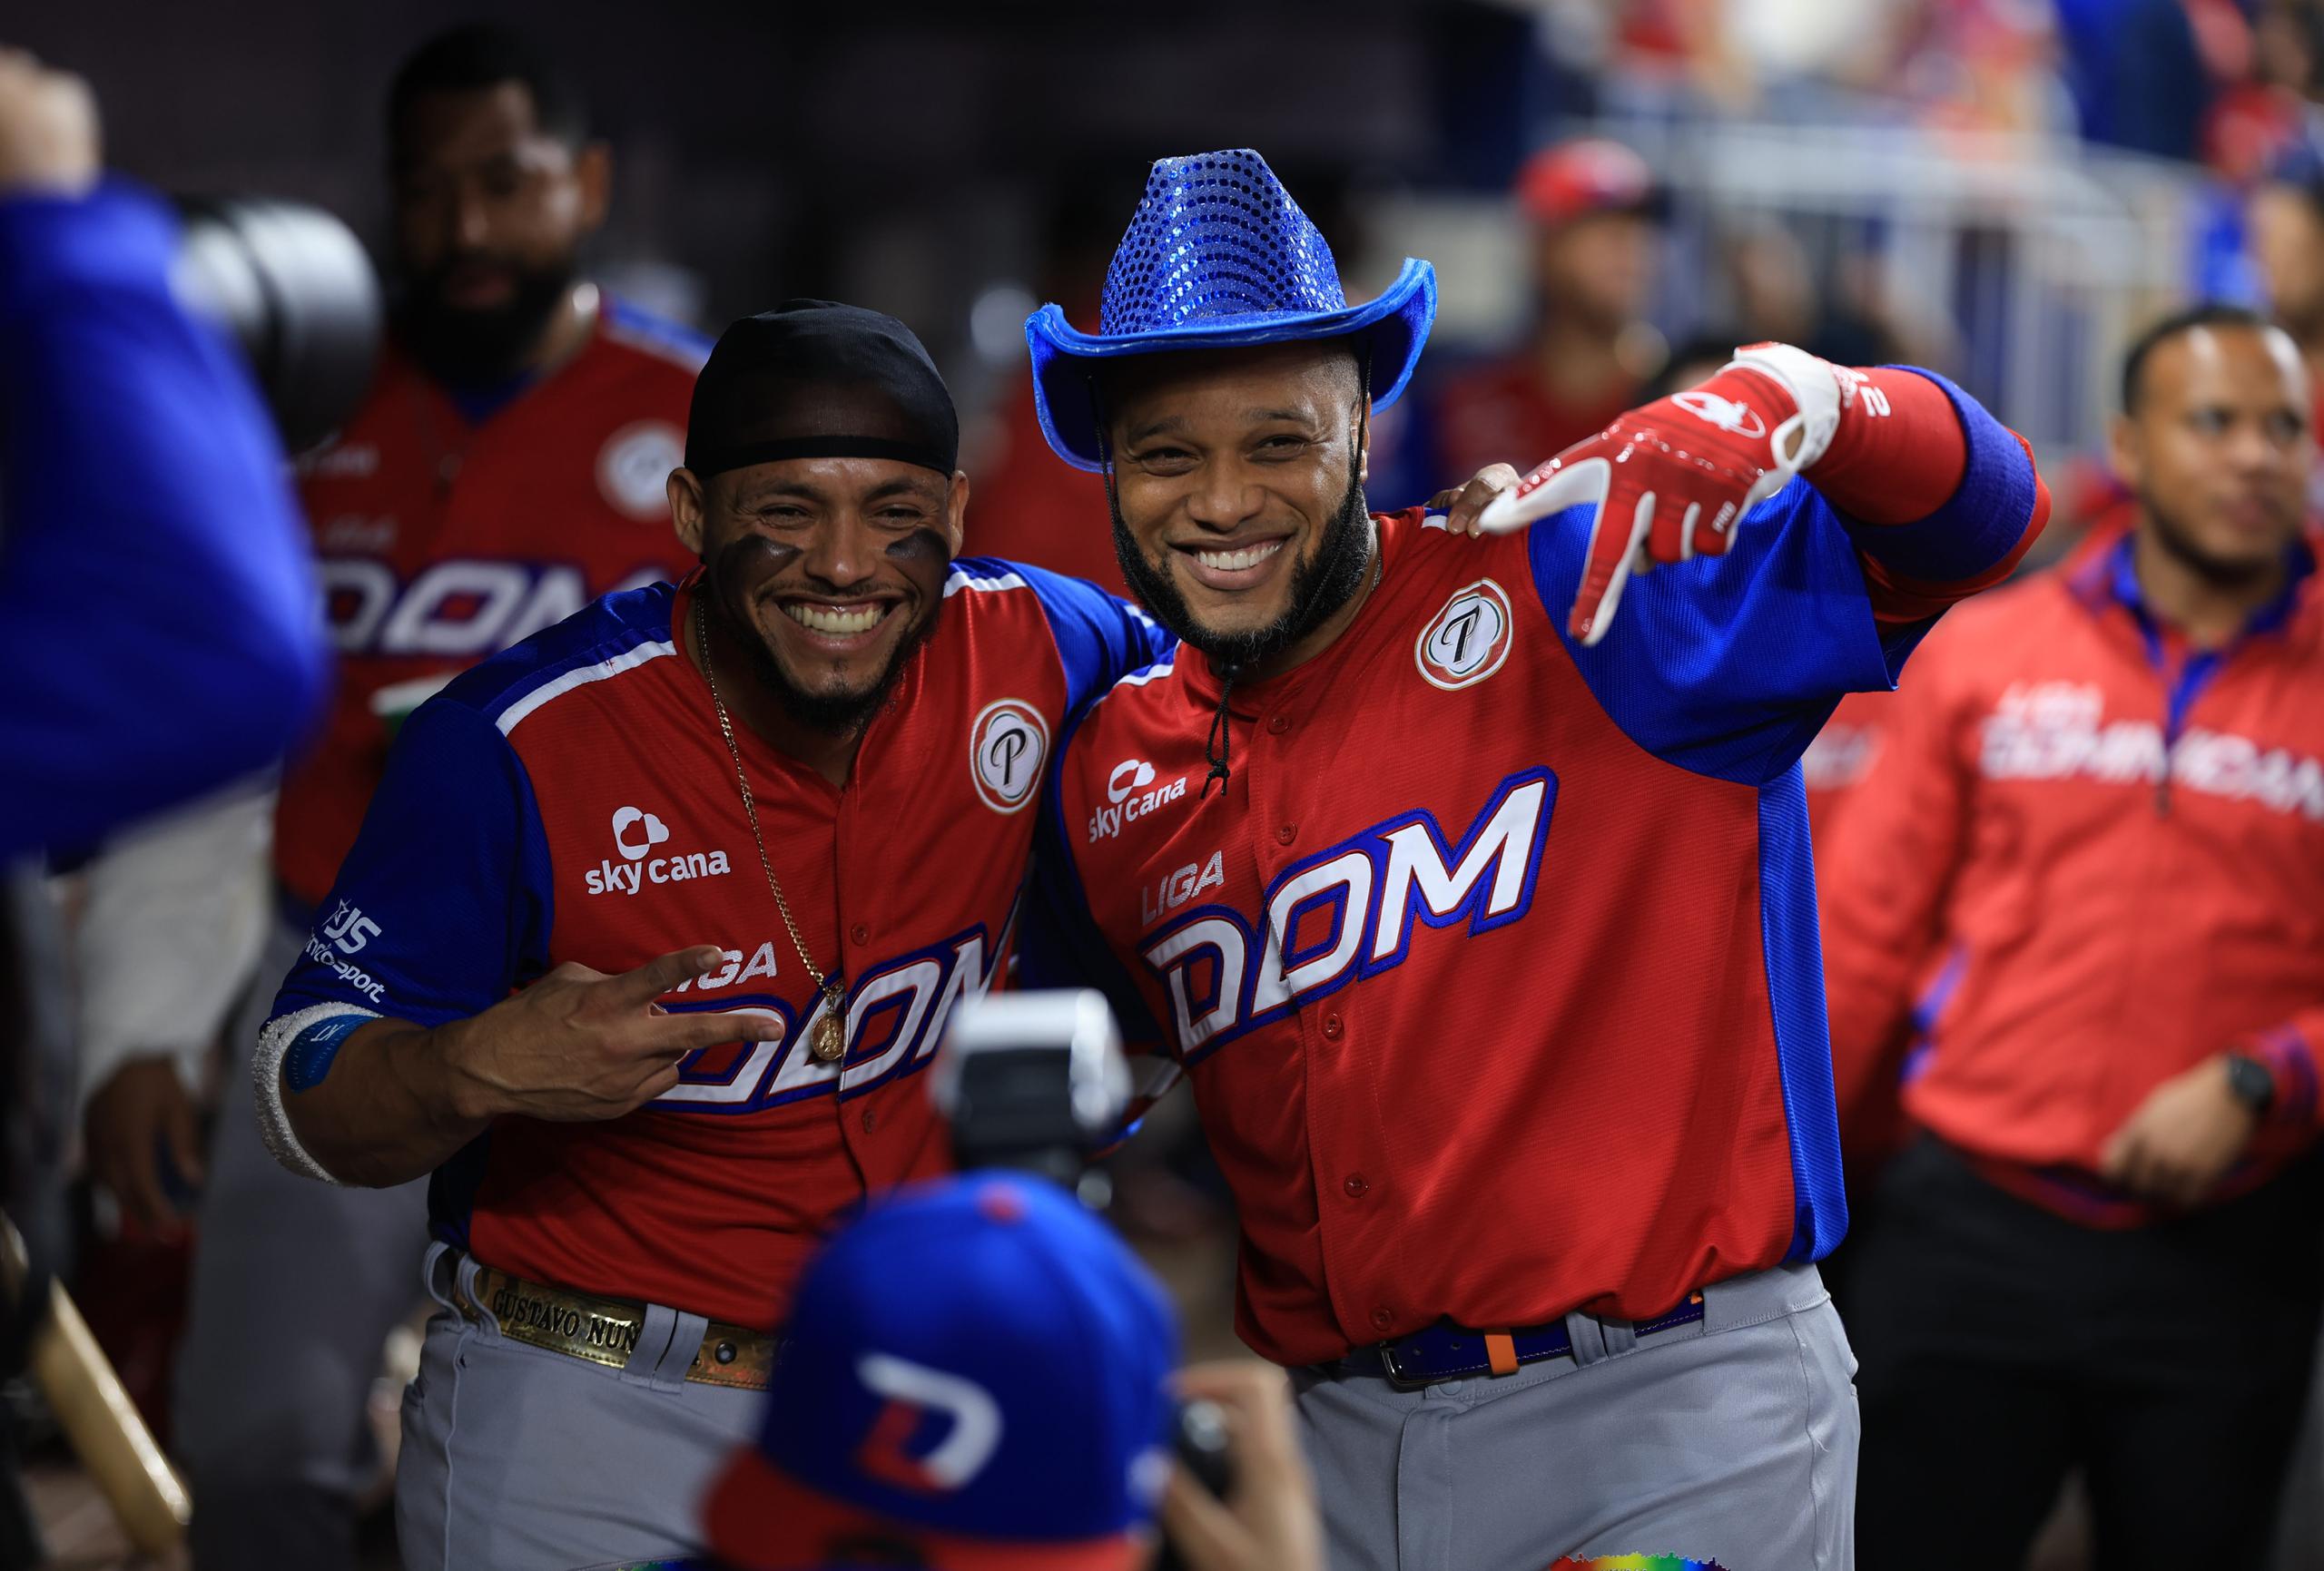 Robinson Canó festeja su cuadrangular de dos carreras junto a sus compañeros en el dugout de República Dominicana.